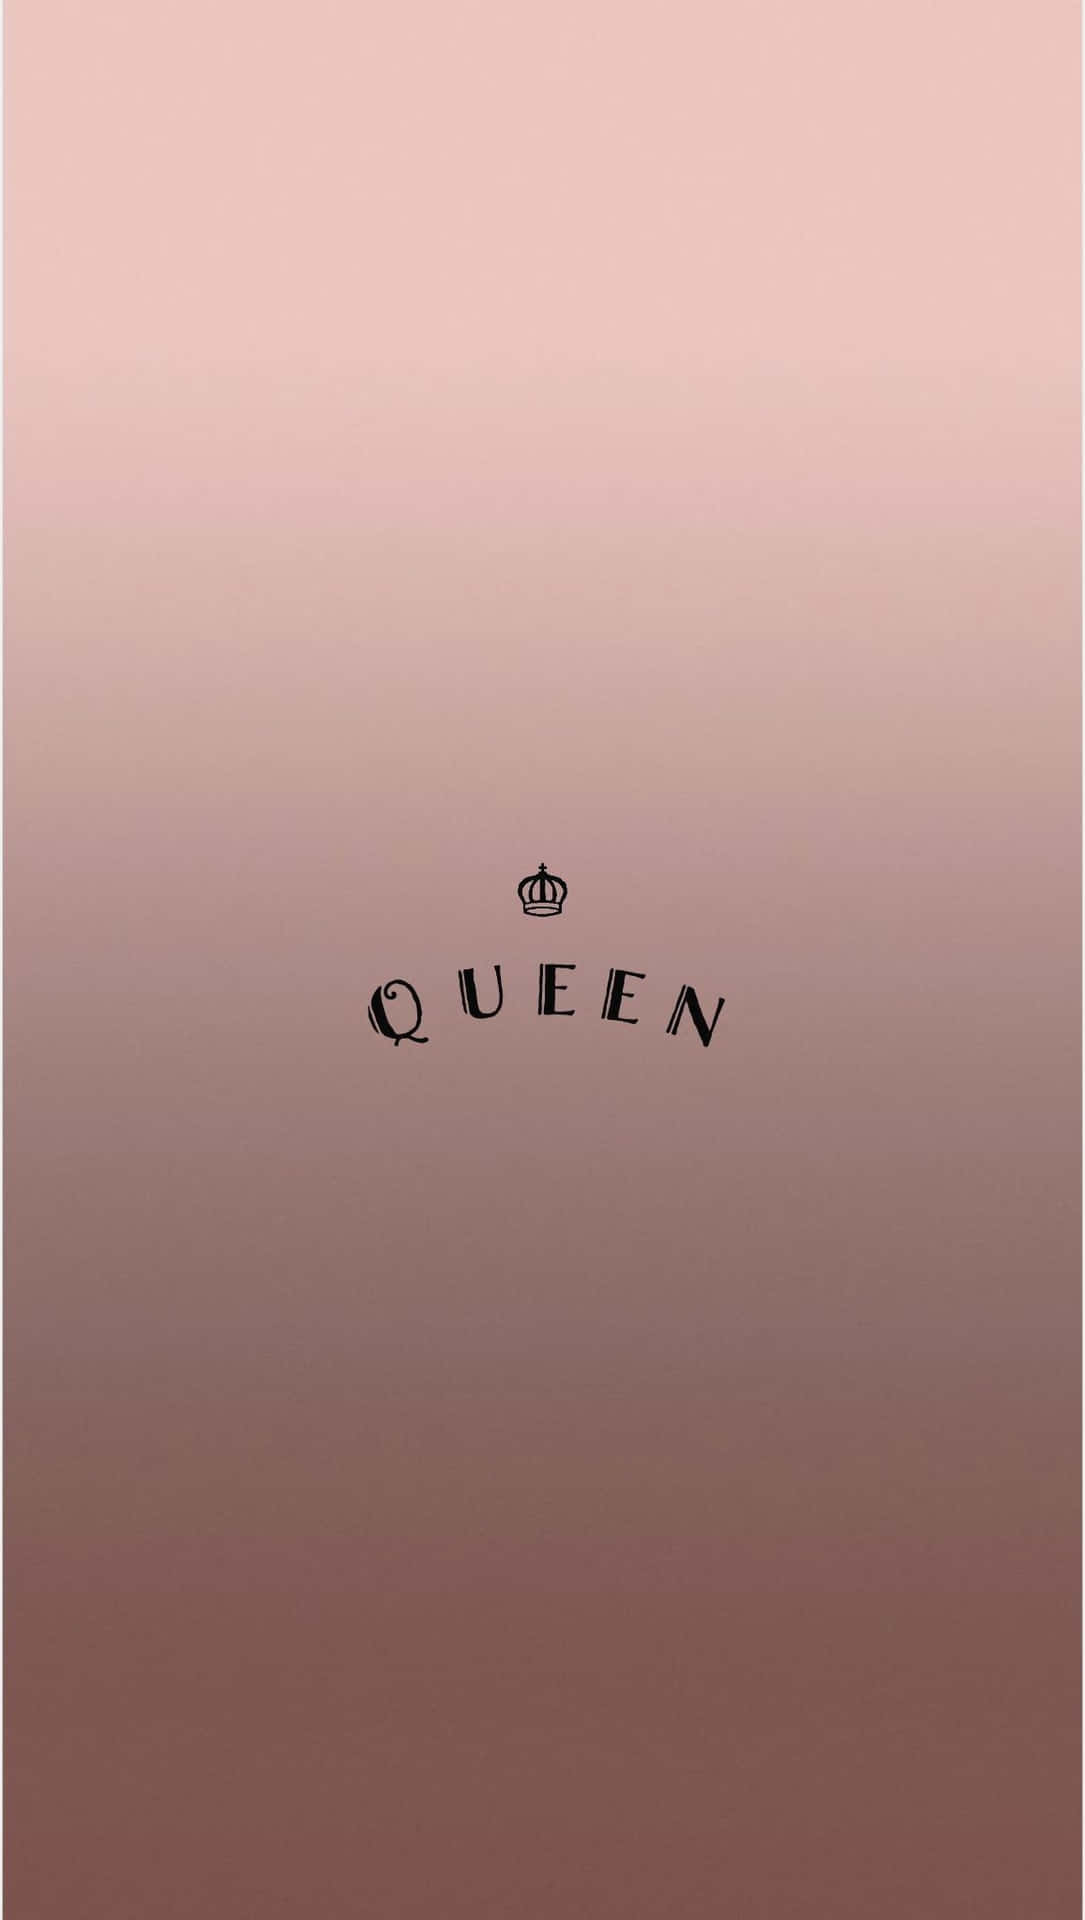 Queen - I Love You - Pink - I Love You - I Love You - I Love You - I Background